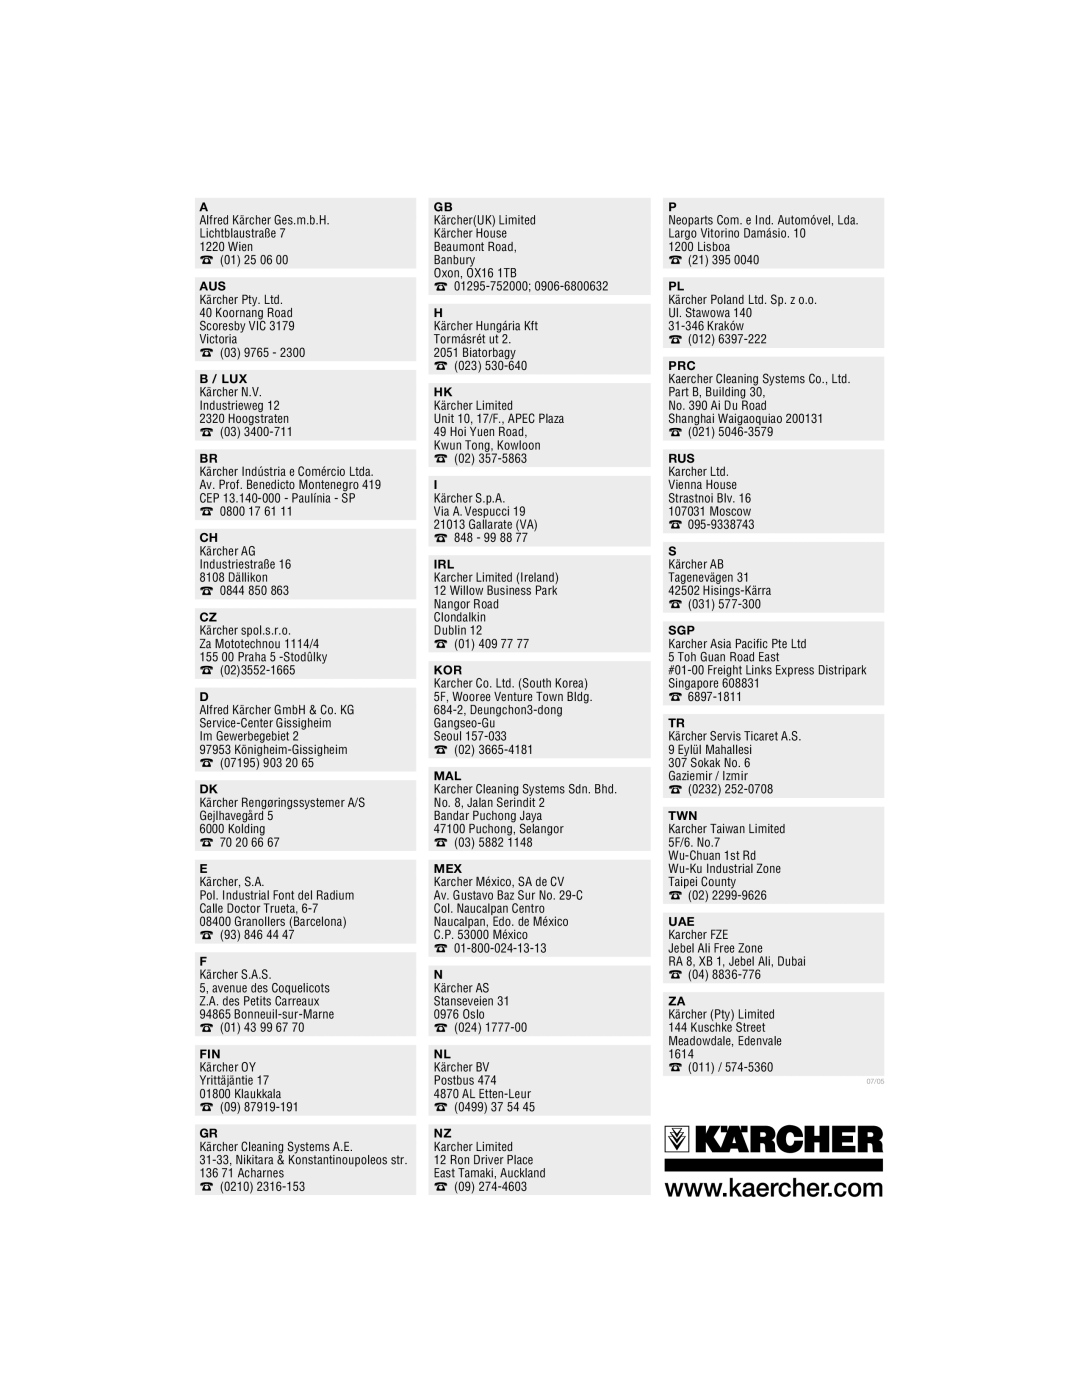 Karcher K2.93 manual B / Lux 